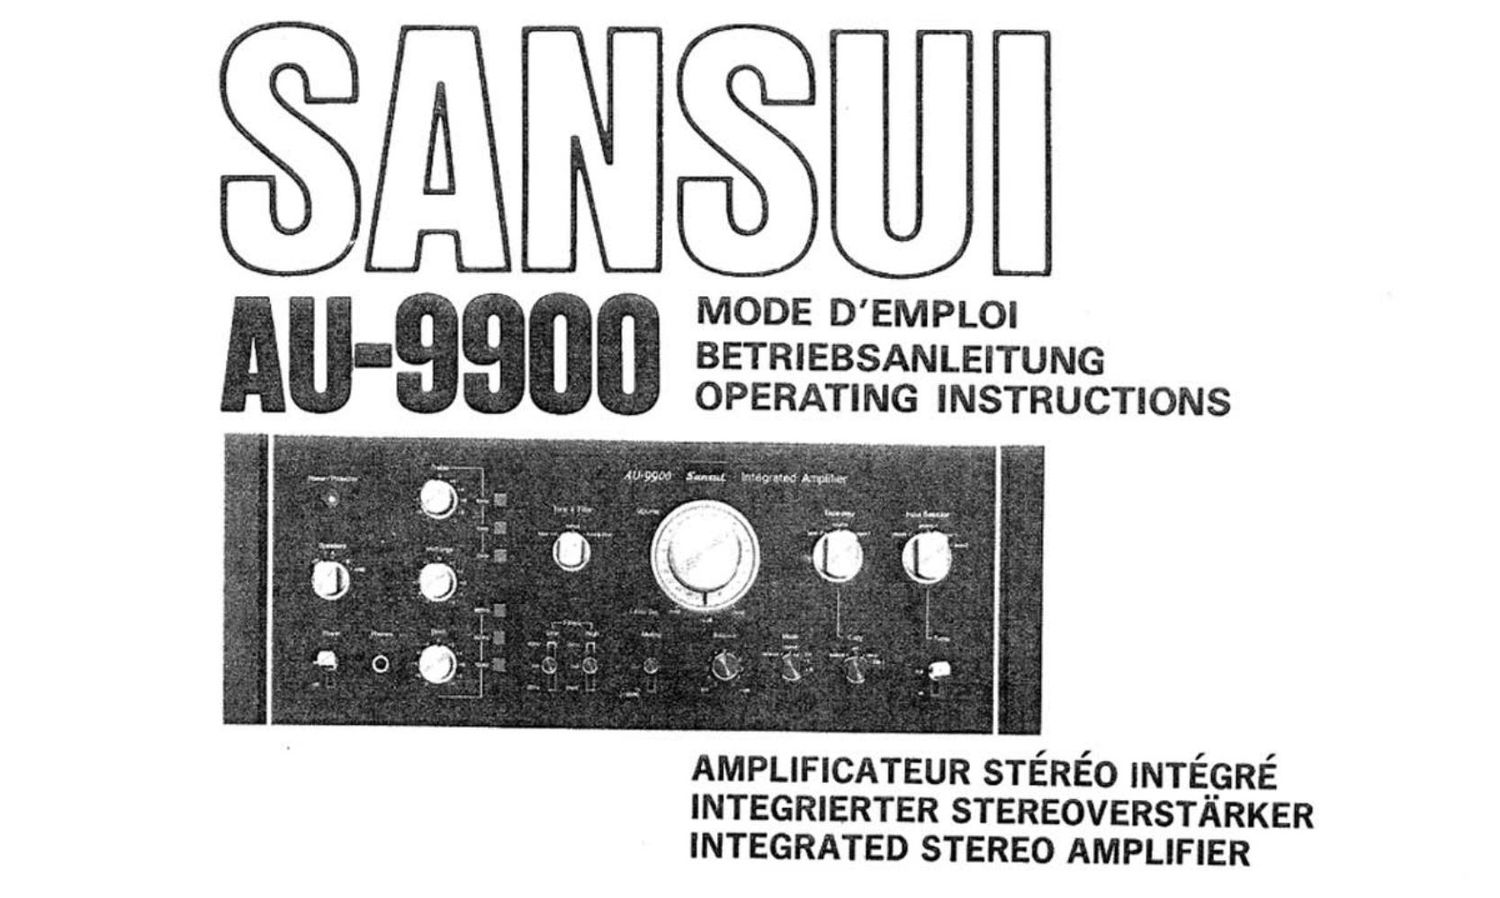 Sansui AU 9900 Owners Manual